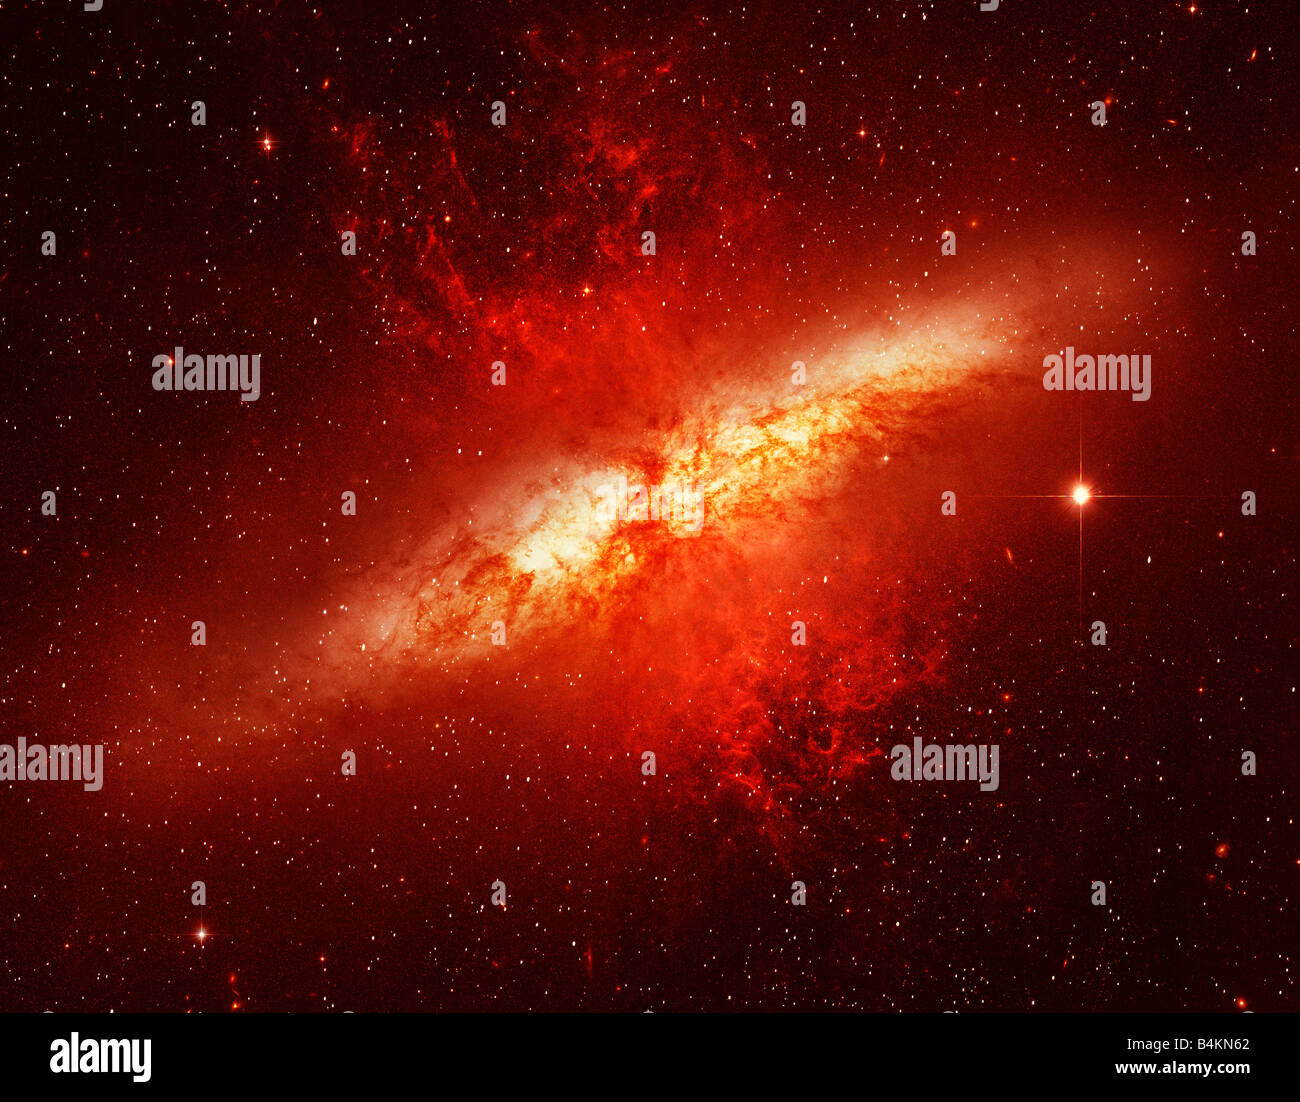 Spiralgalaxie Millionen Lichtjahre von der Erde von der NASA Hubble Teleskop fotografiert Stockfoto